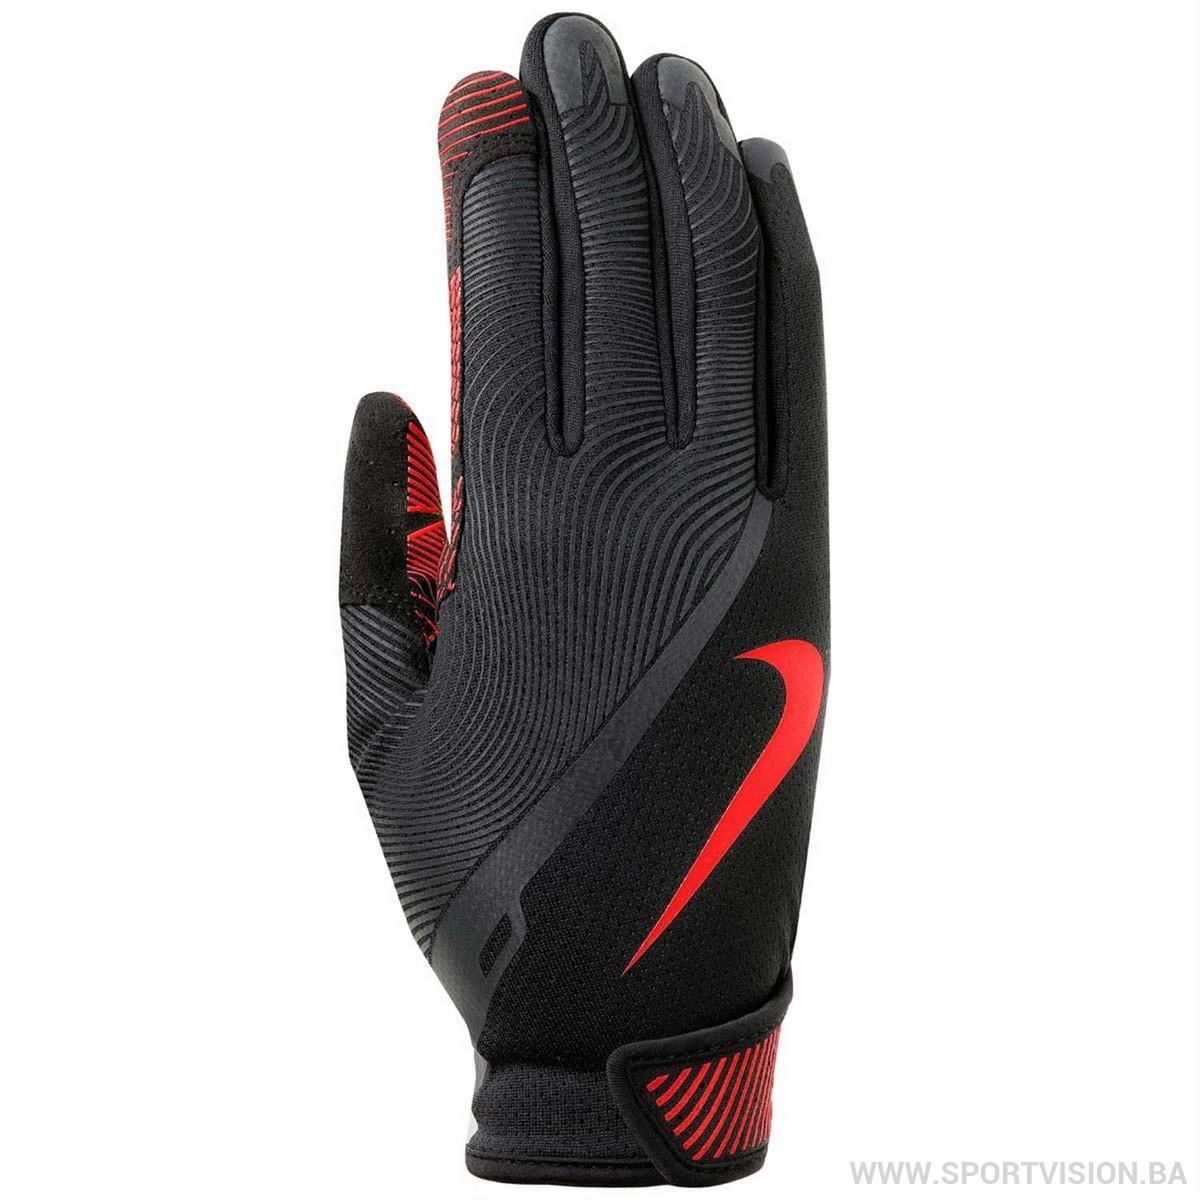 Renegade Glove Lg